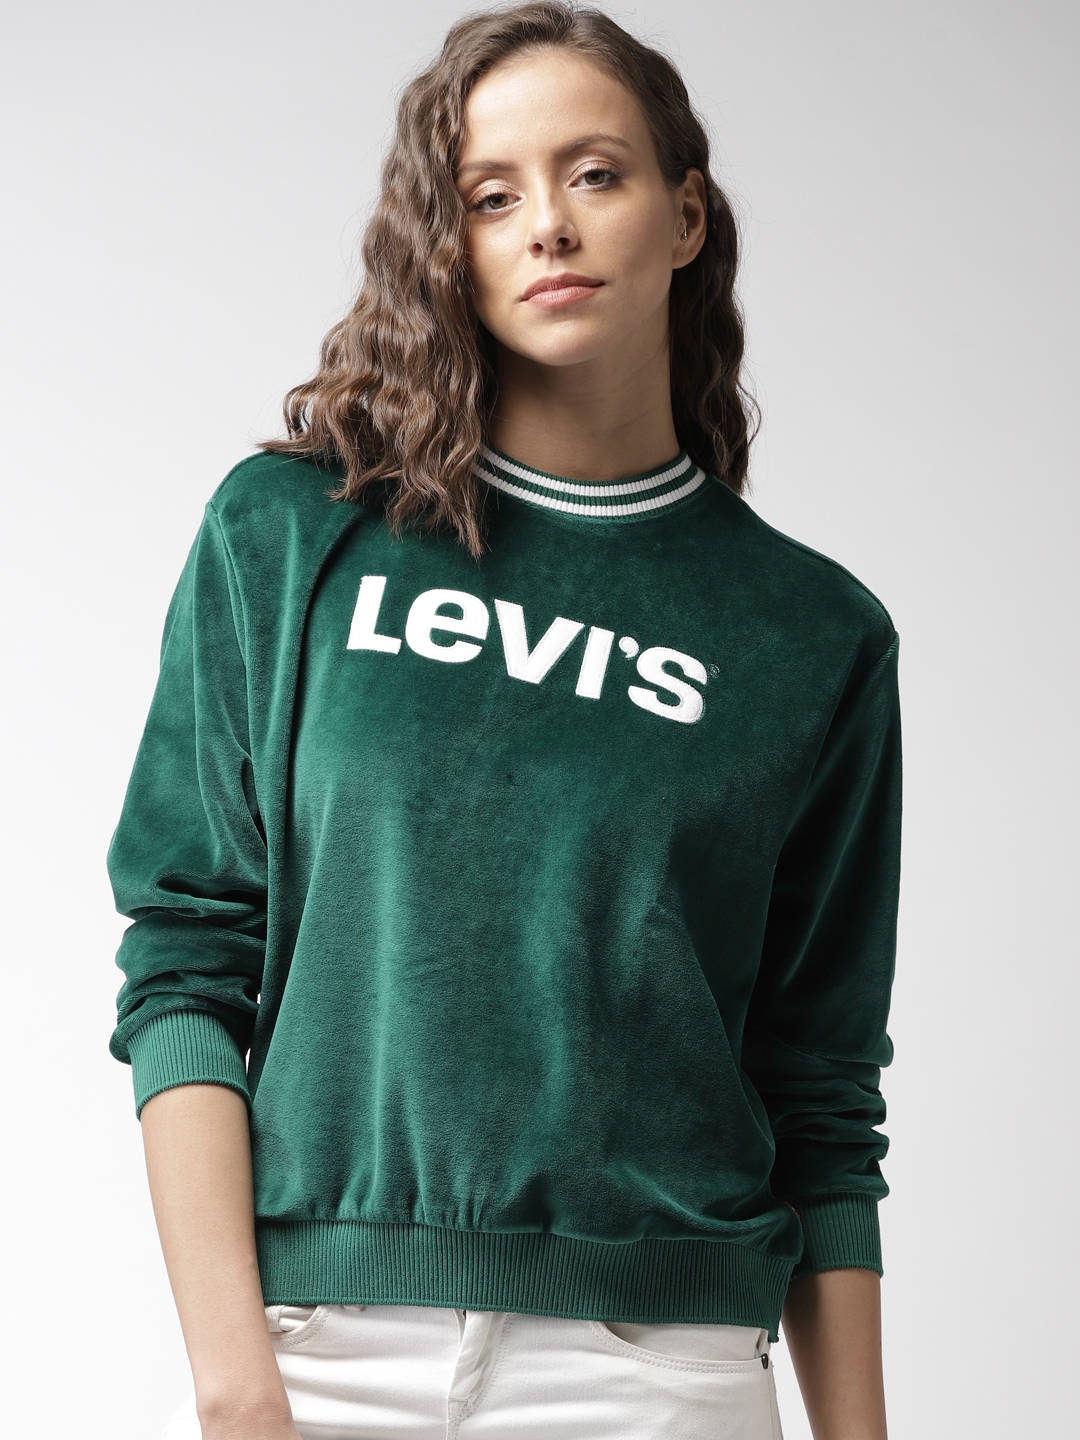 Buy Levis Women Green Self Design 